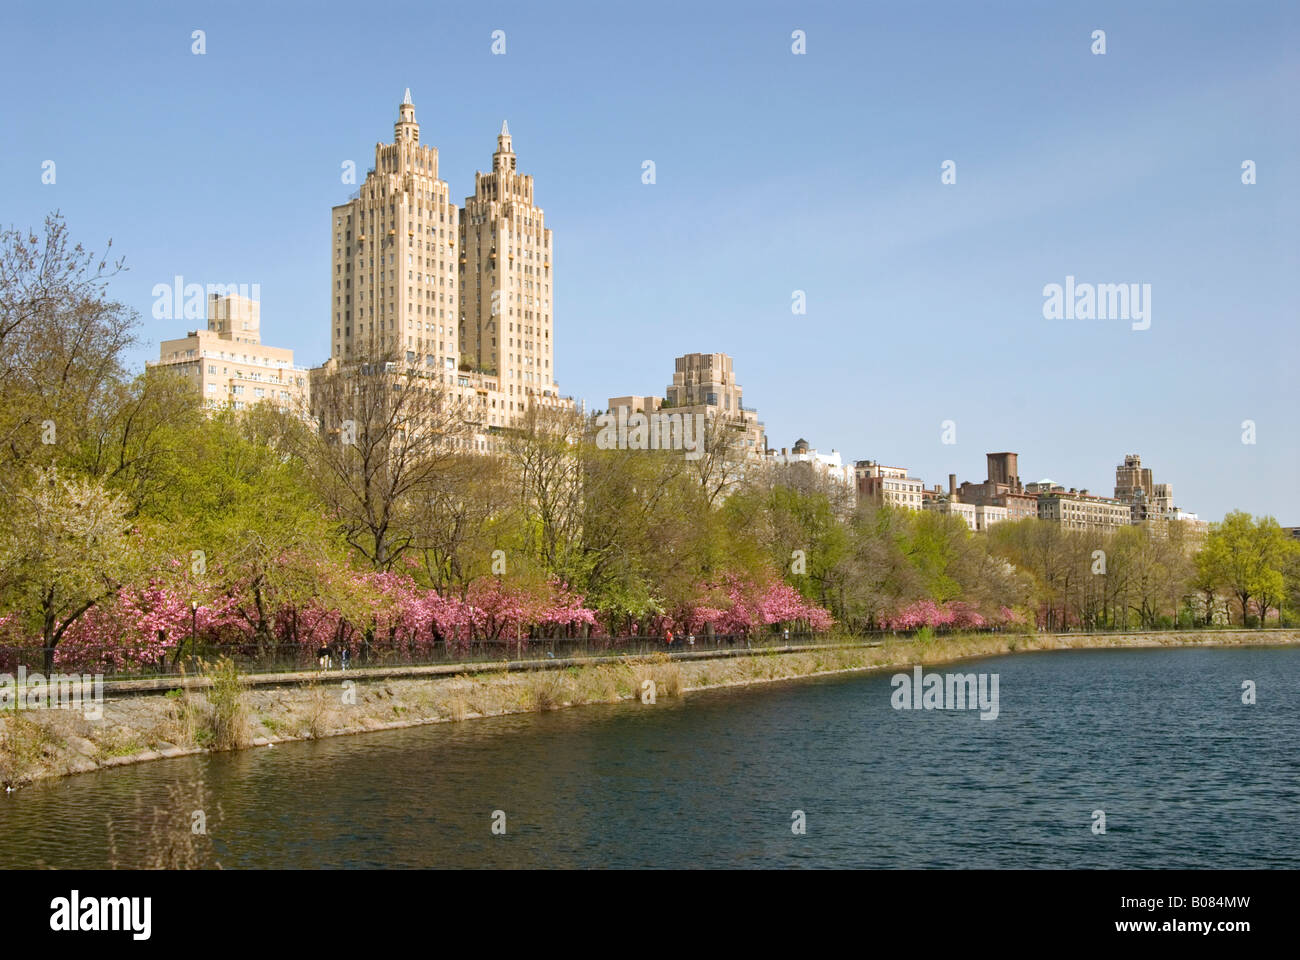 Das Wahrzeichen El Dorado Gebäude am Central Park West in Manhattan mit Blick auf den Central Park-Stausee Stockfoto